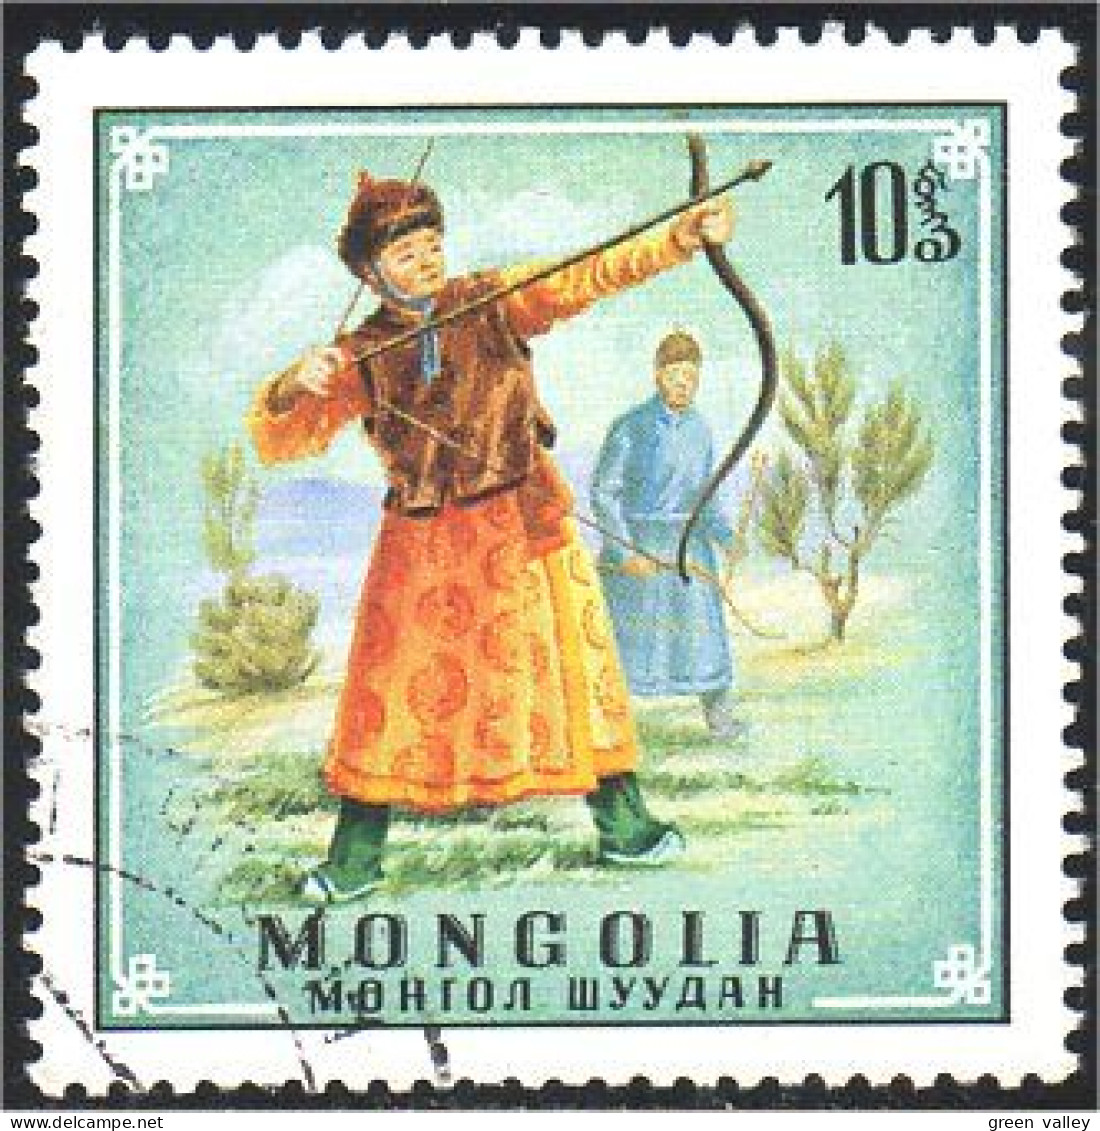 620 Mongolie Archer Traditionnel Traditional Archer (MNG-29) - Tir à L'Arc